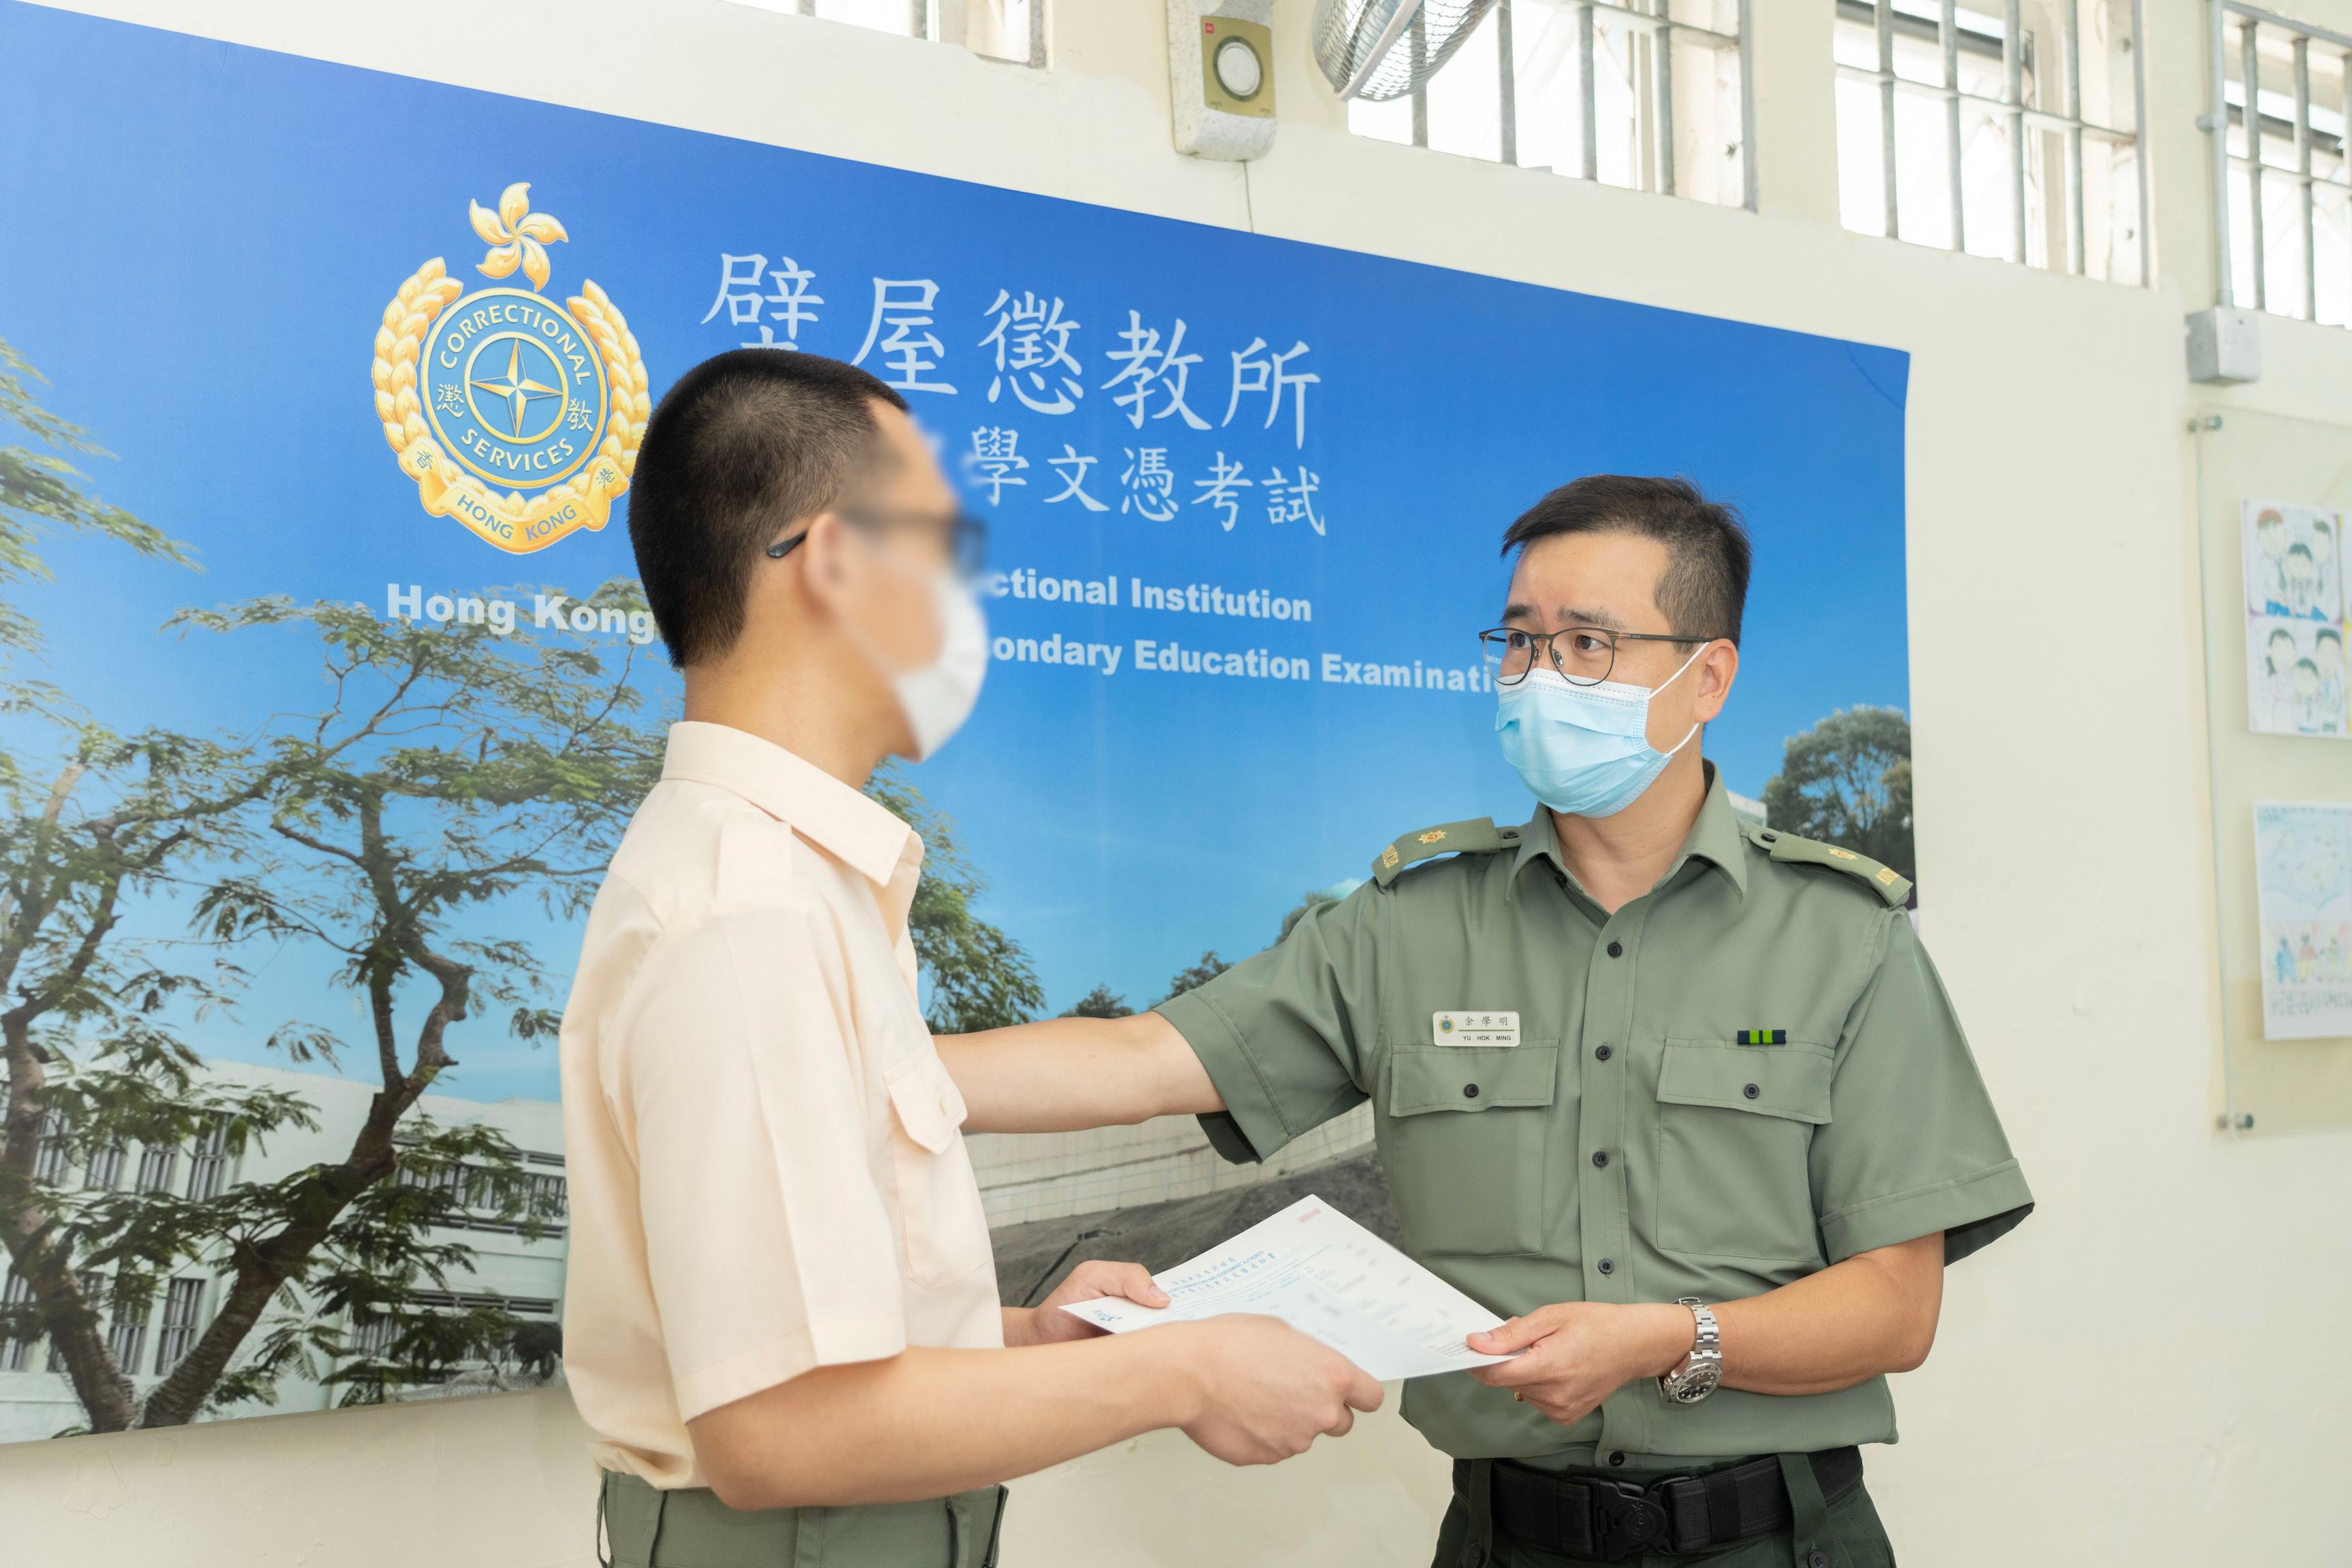 今年共有12名青少年在囚人士報考香港中學文憑考試。圖示壁屋懲教所監督余學明（右）頒發香港中學文憑考試成績通知書予青少年在囚人士小傑（化名）。